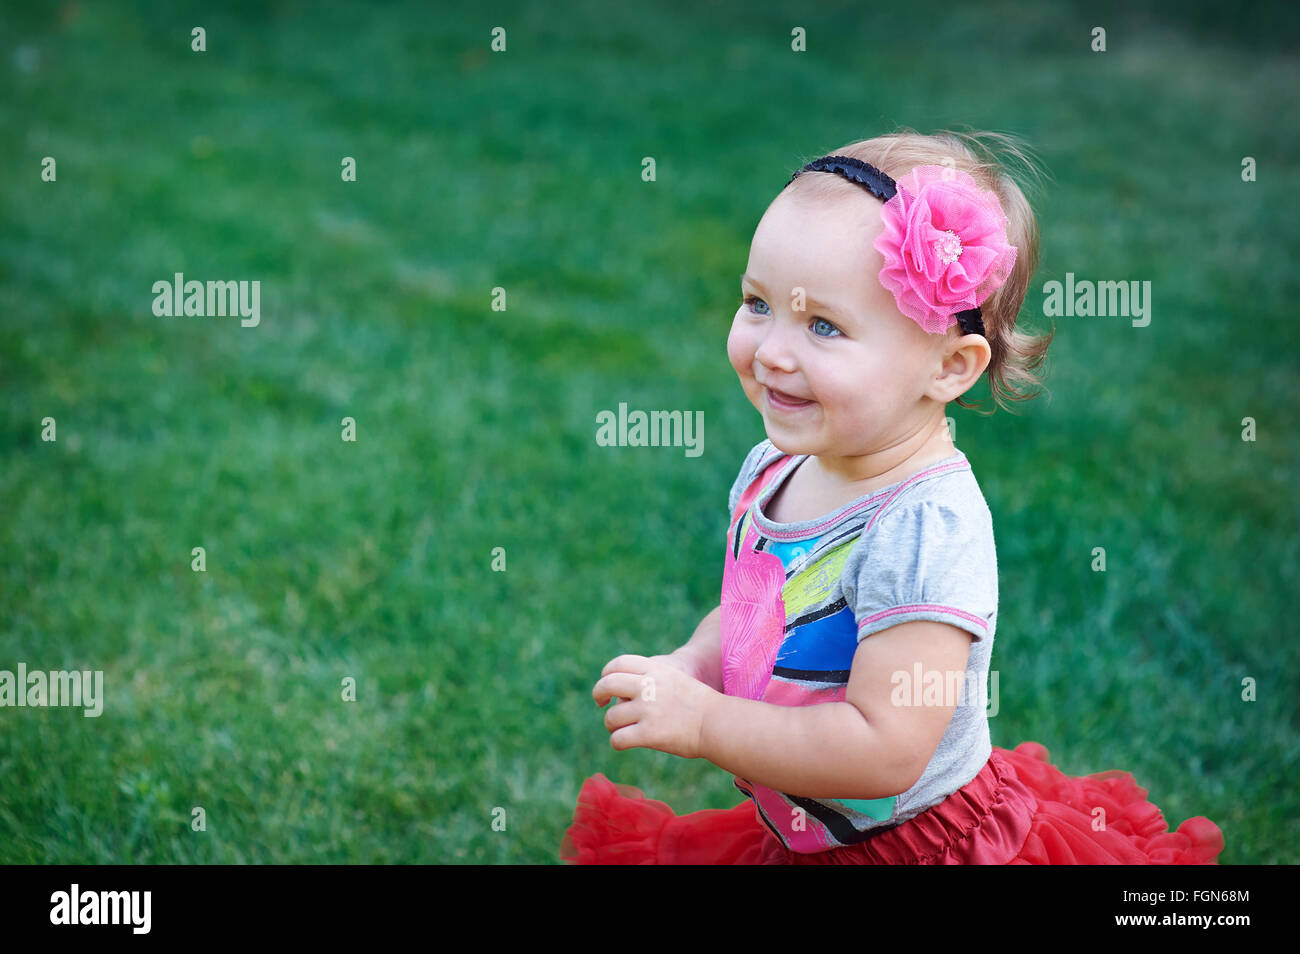 little happy cheerful girl running around playing and having fun Stock Photo